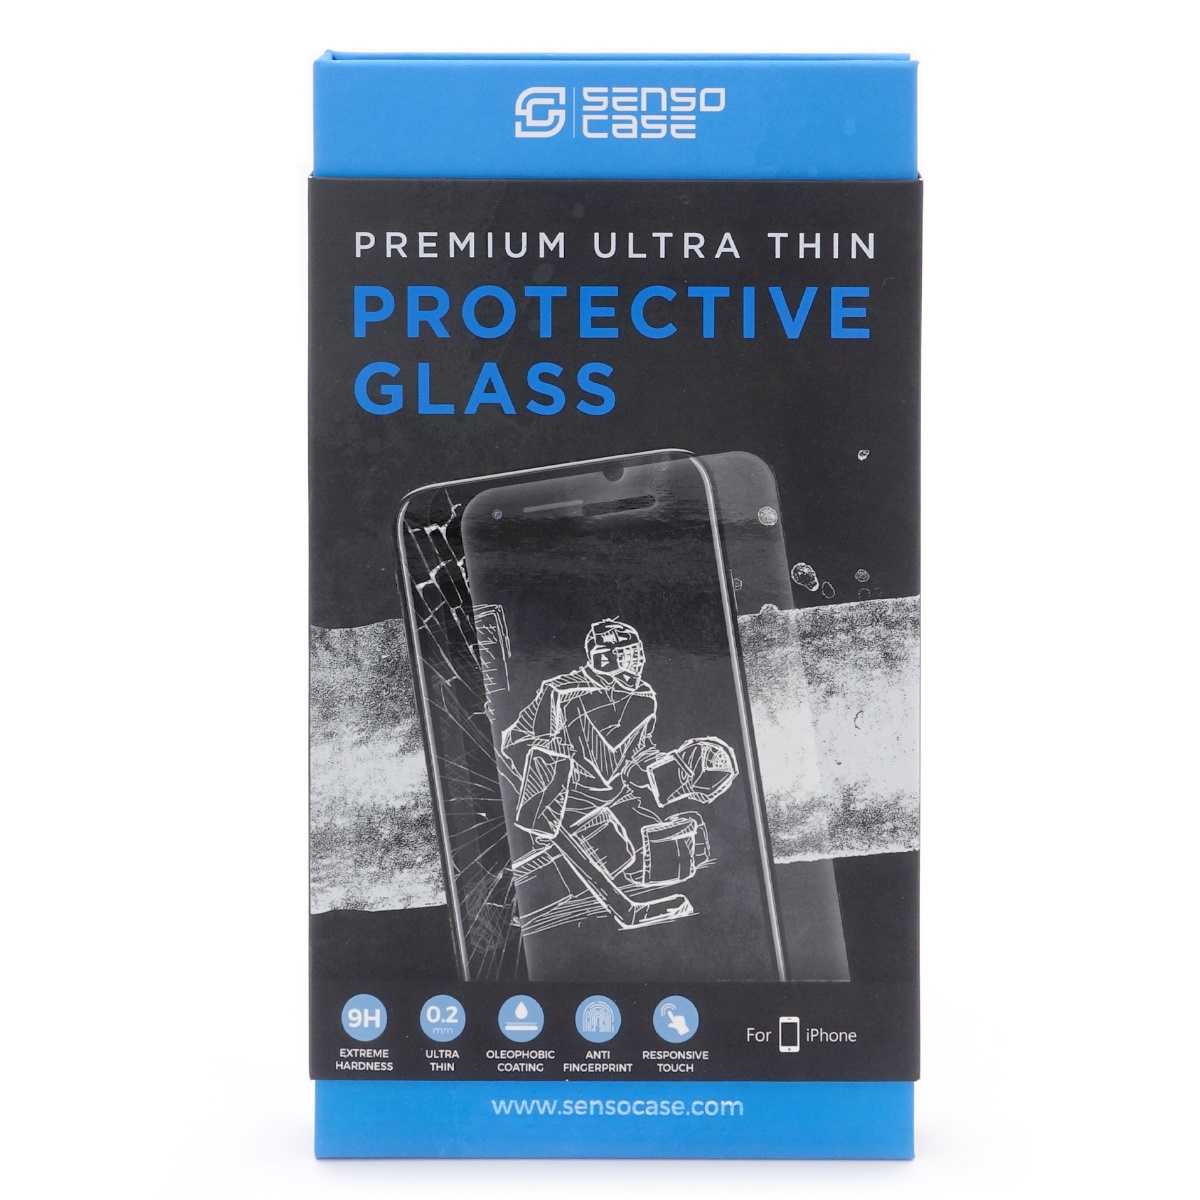 фото Защитное стекло SensoCase для iPhone 8 Protective Glass 0.2 mm 2,5D 9H+, ультратонкое, кристально прозрачное, PG-IP8